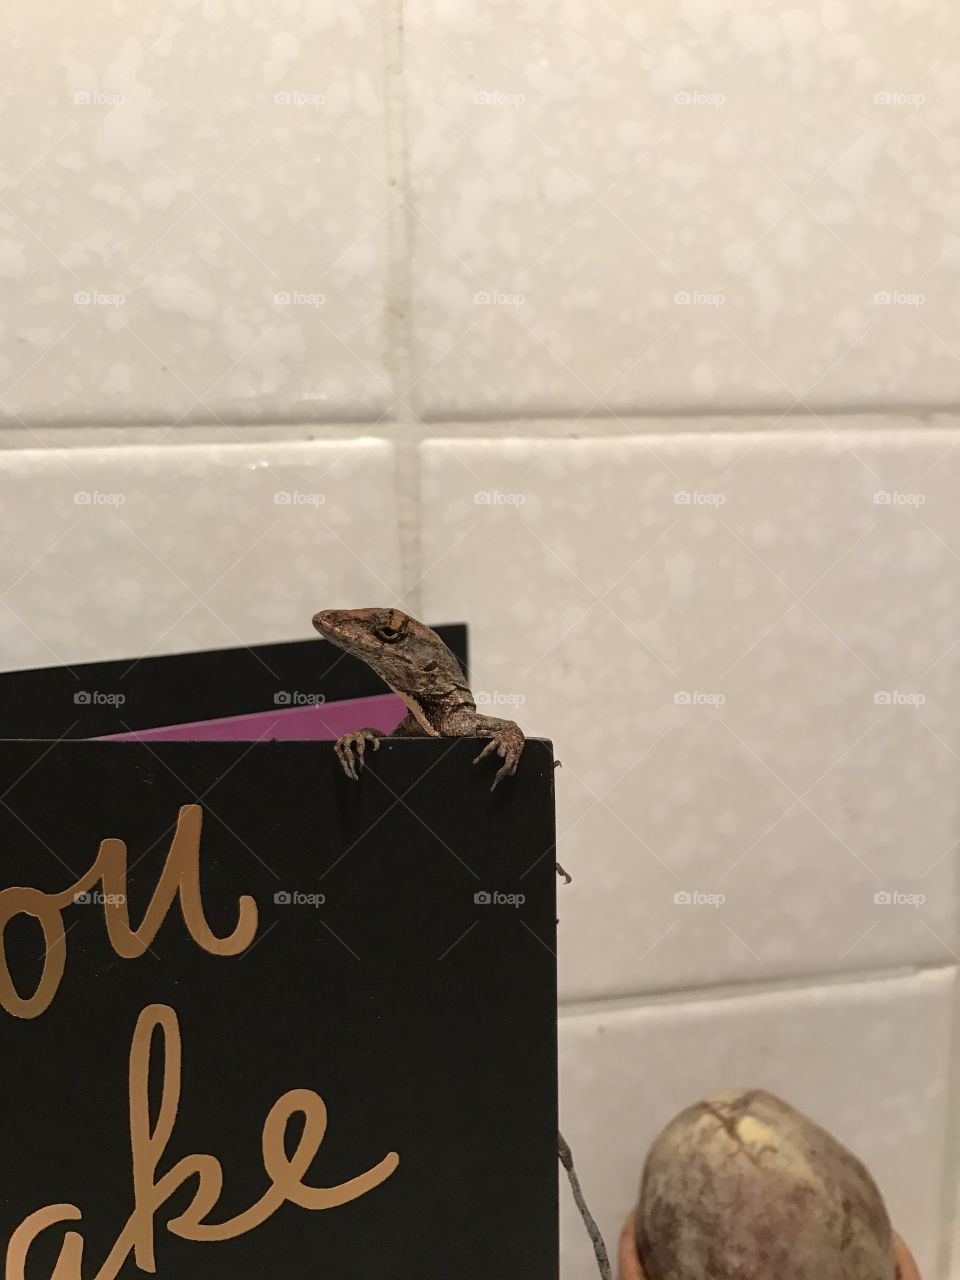 Lizard on a card